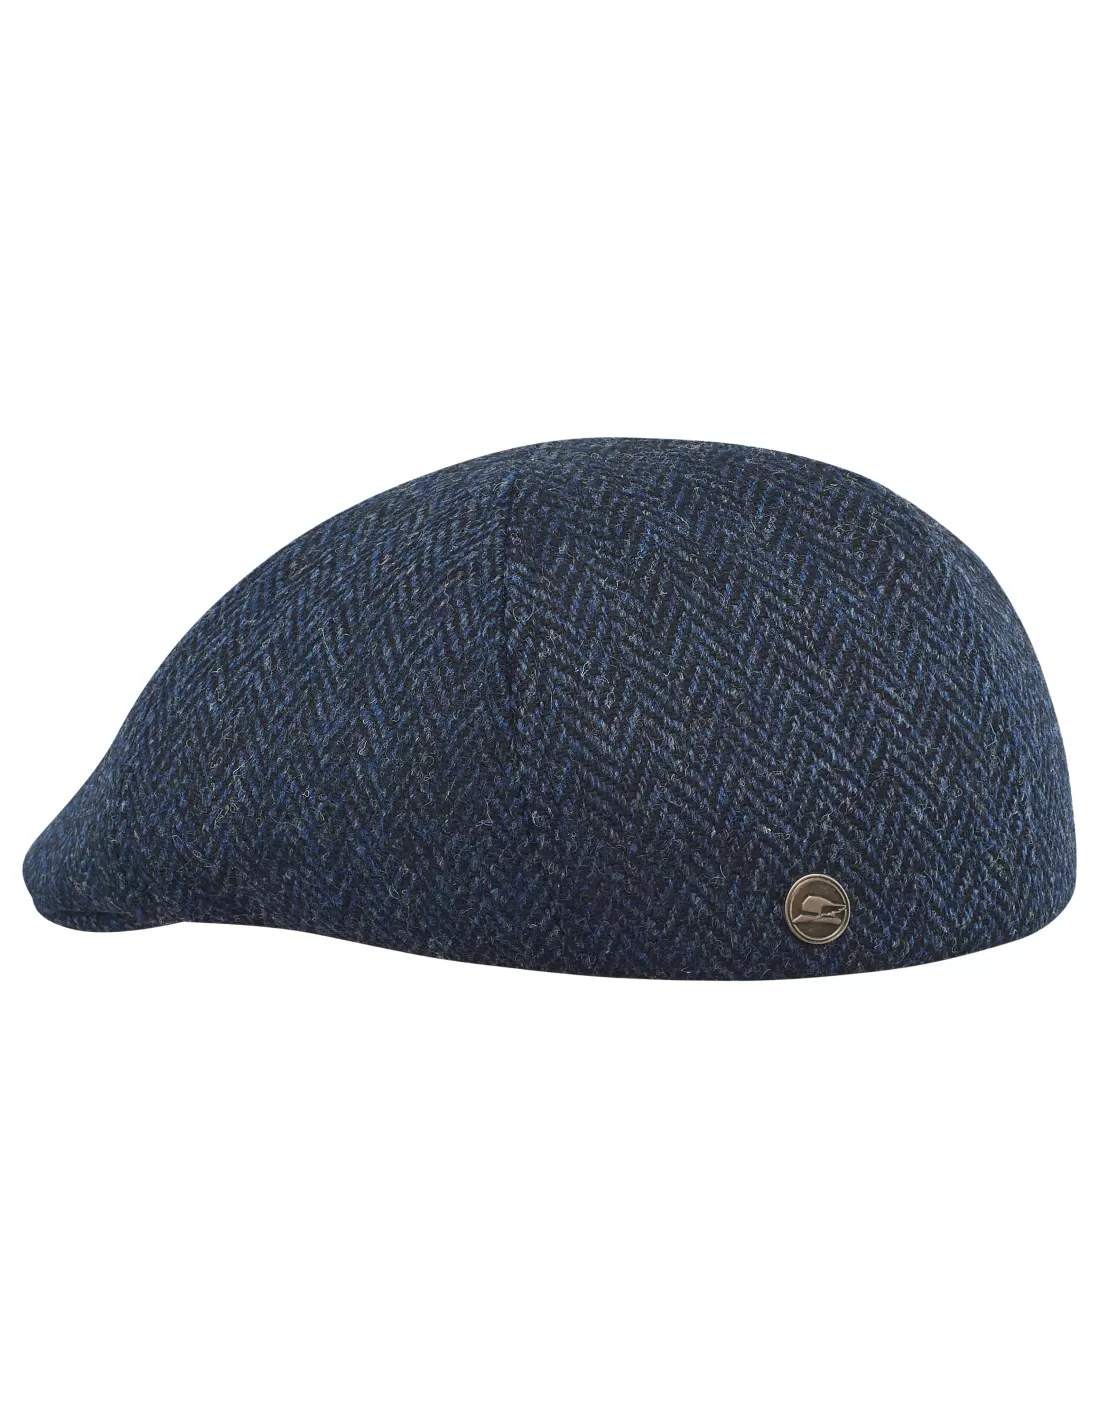 Rusty - duckbil cap made of genuine Harris Tweed (100% wool) Size